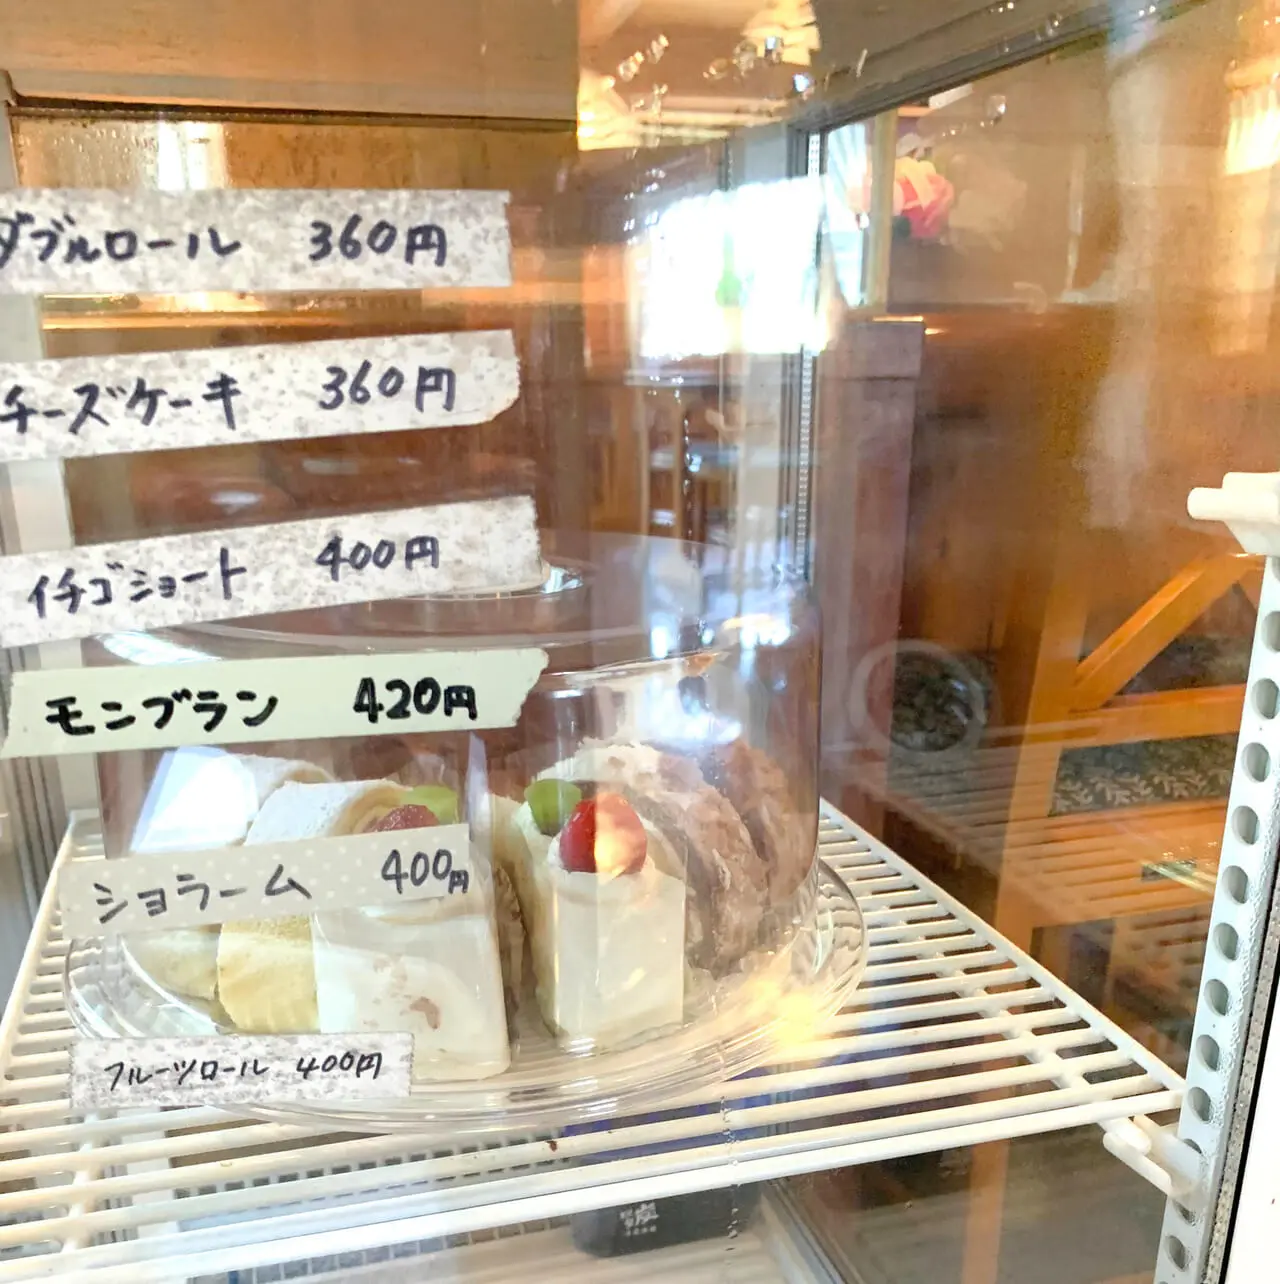 市民の森の隠れ家的喫茶店「喫茶pastei」では品数豊富で美味しい日替わりランチが頂けます!!